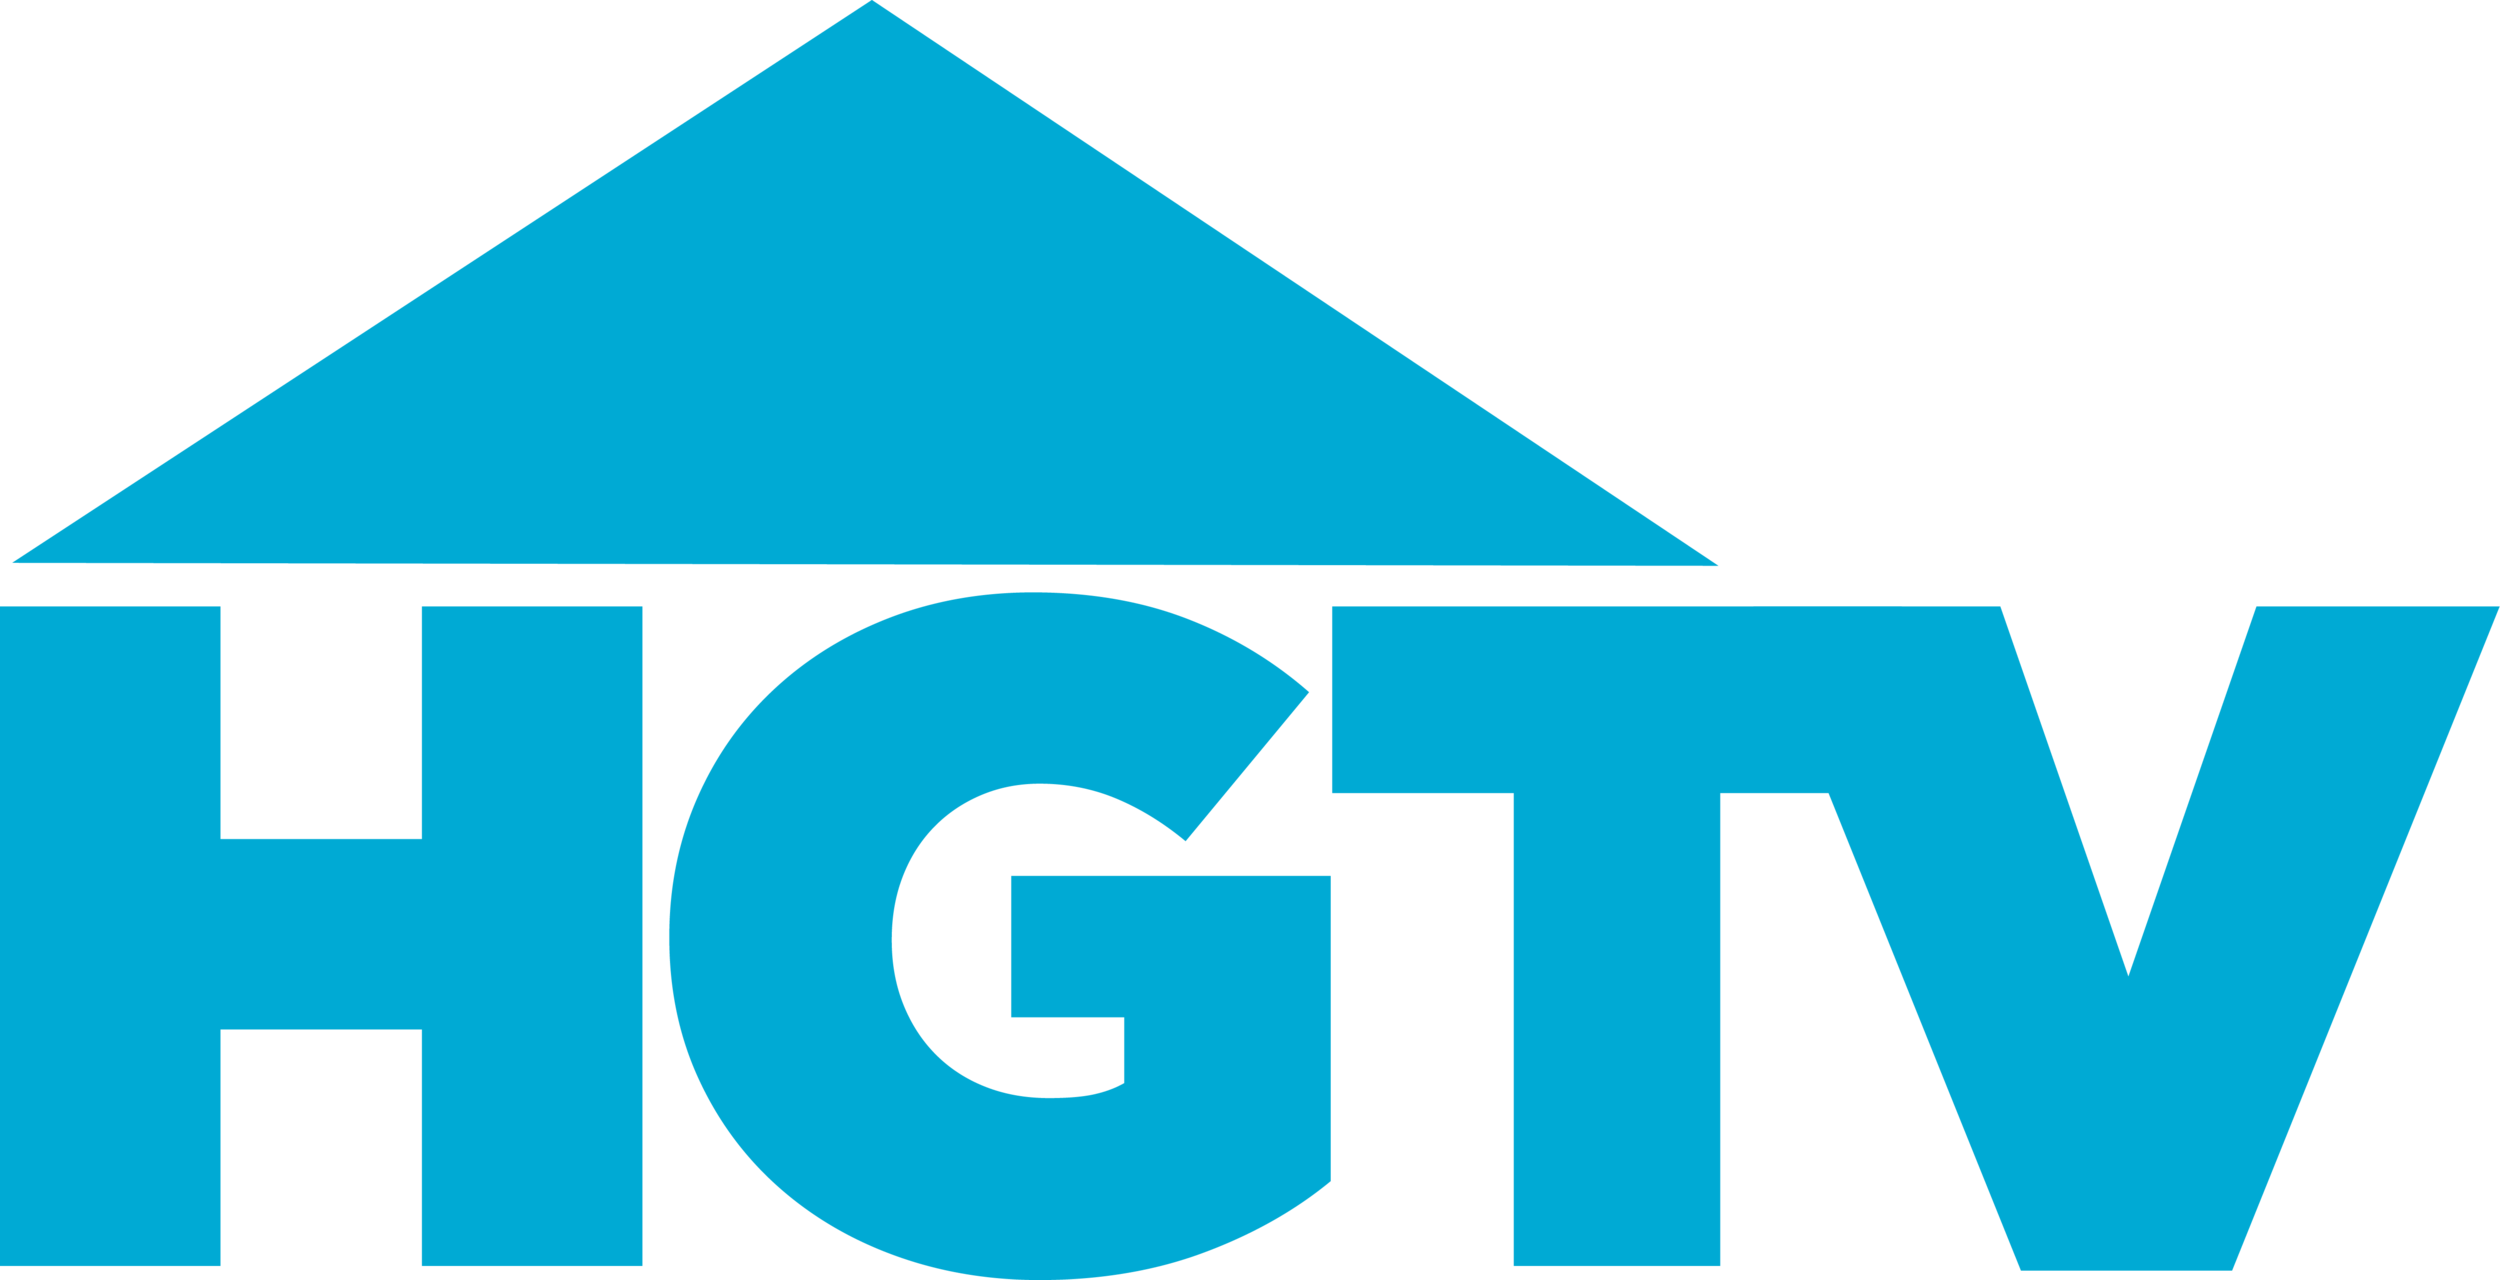 HGTV_logo_2015.png